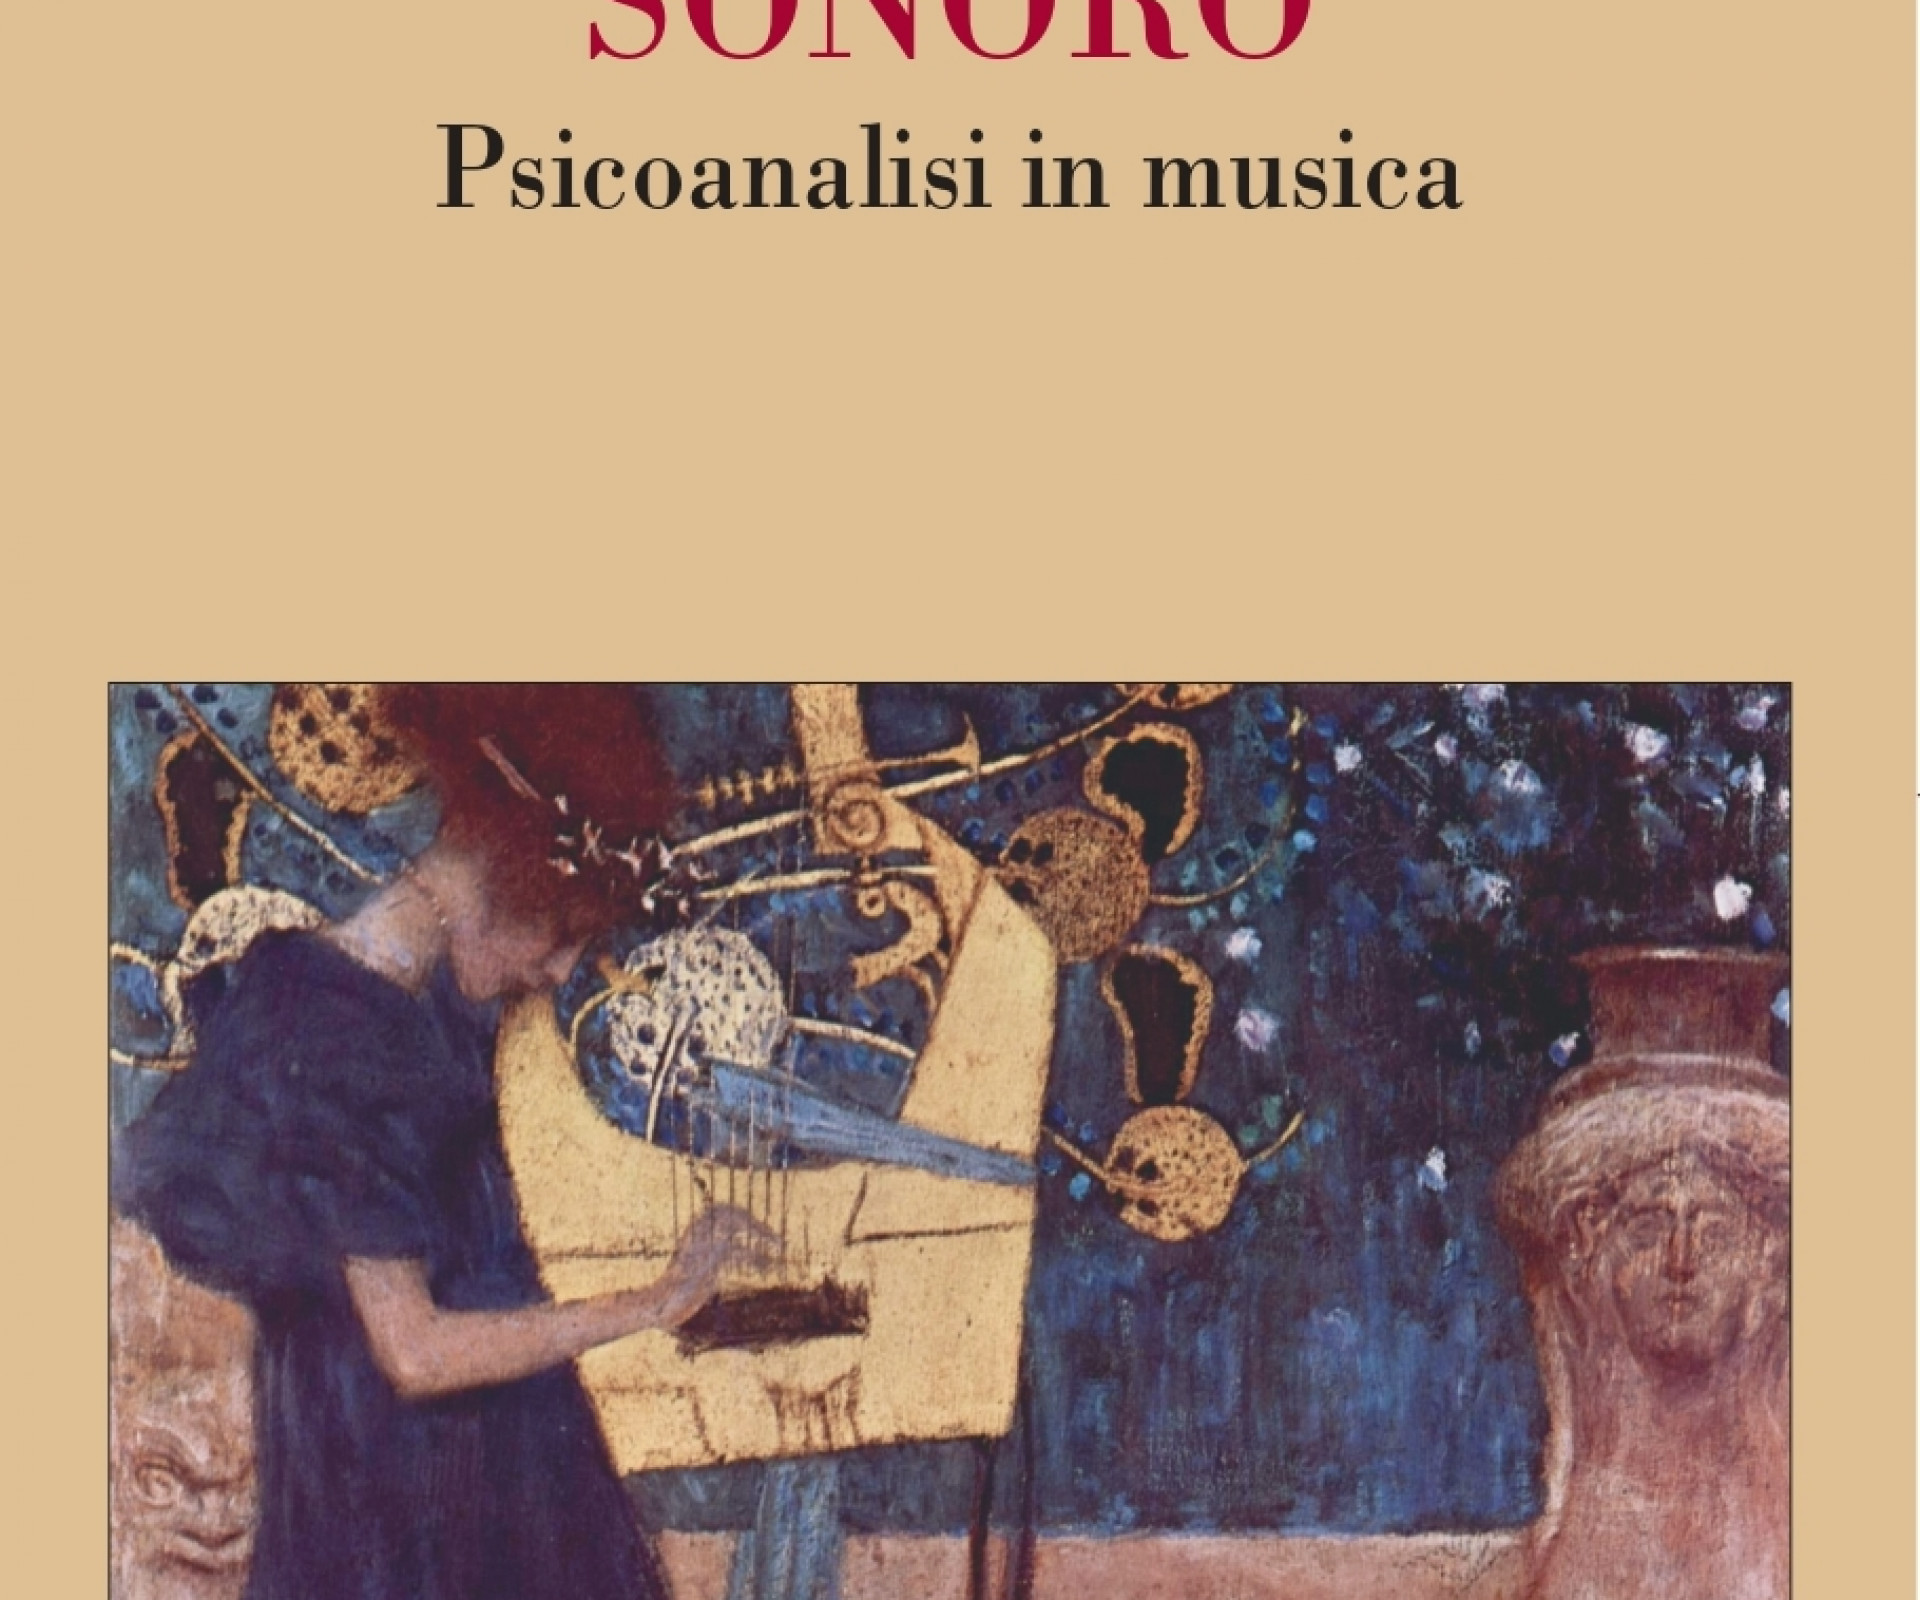 Ludovica Grassi : la Musica, il Silenzio e la Psicoanalisi.